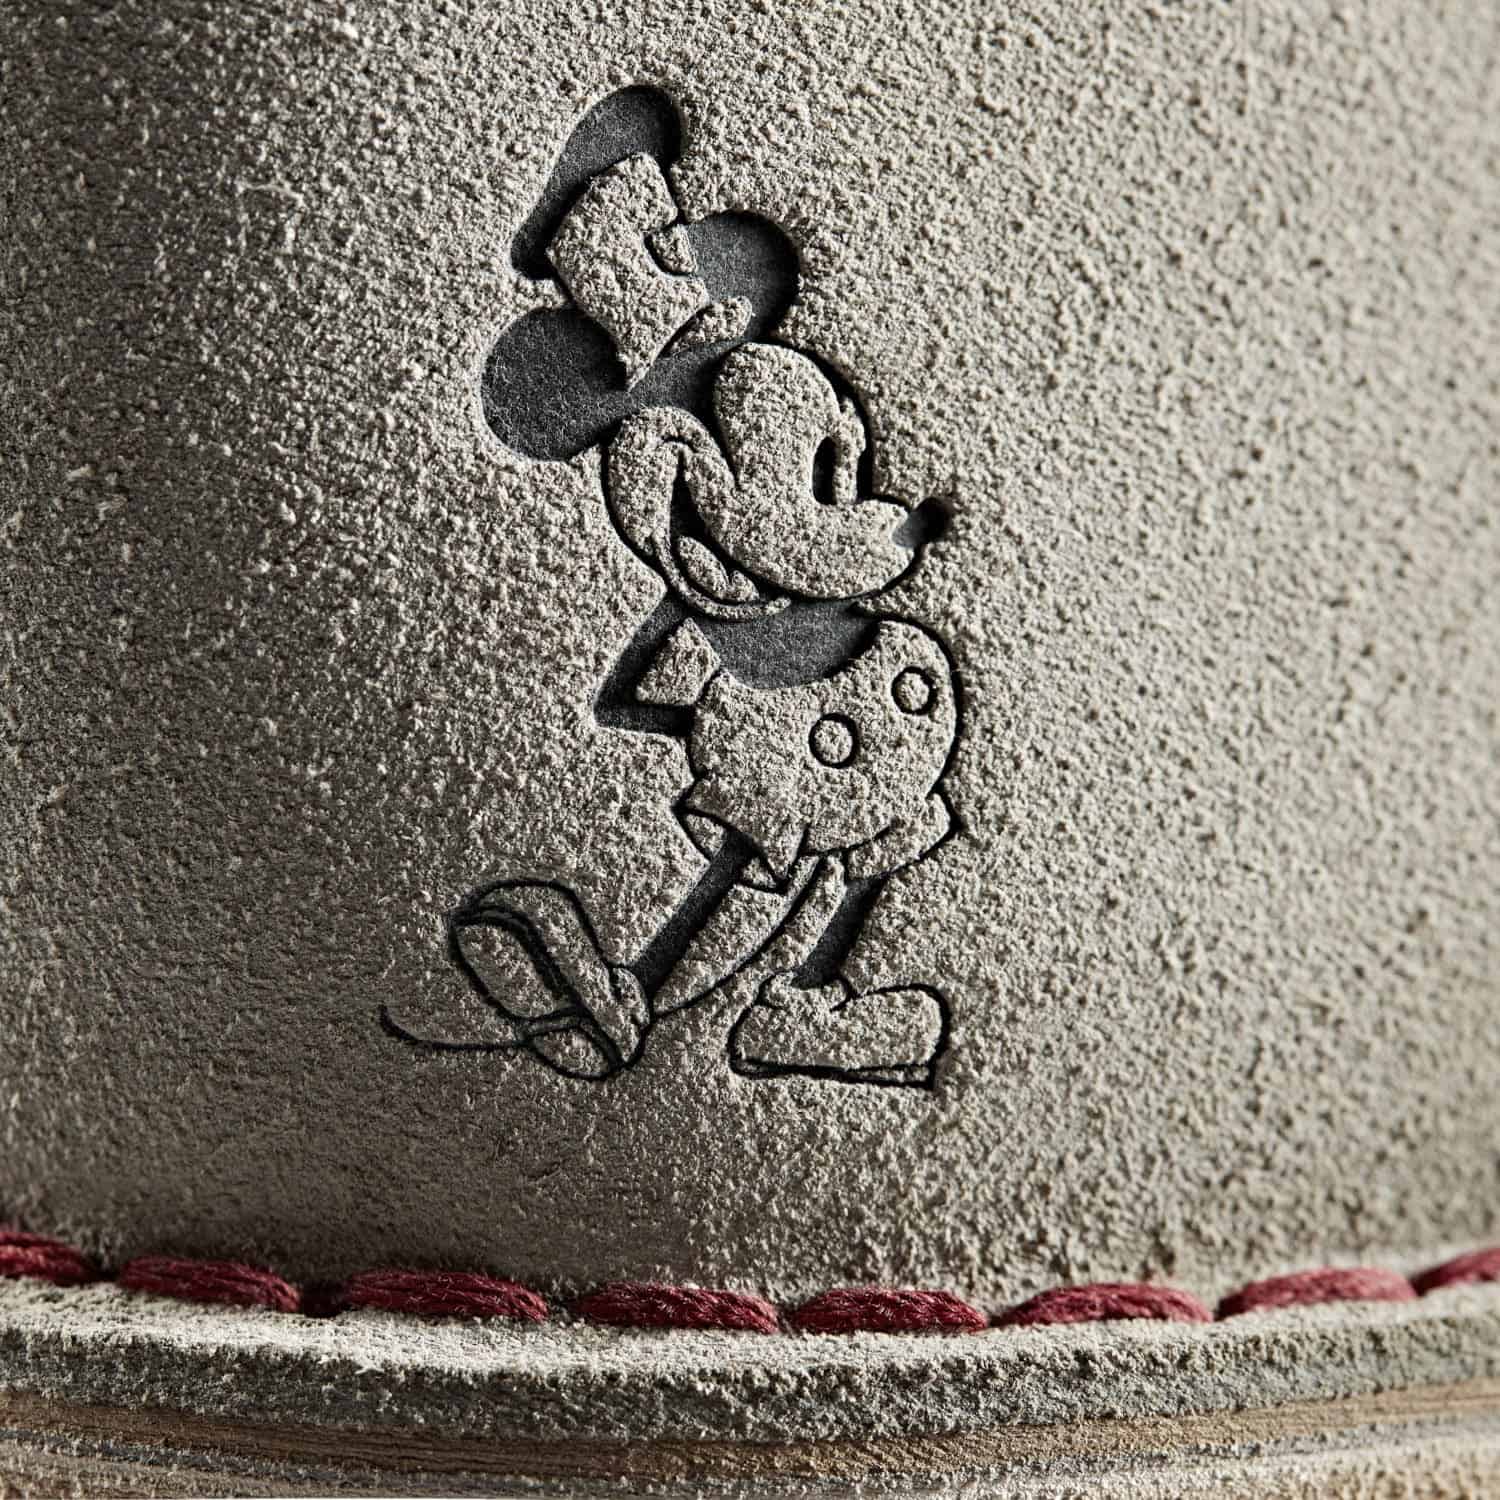 Clarks Desert Boot - Disney Mickey Mouse